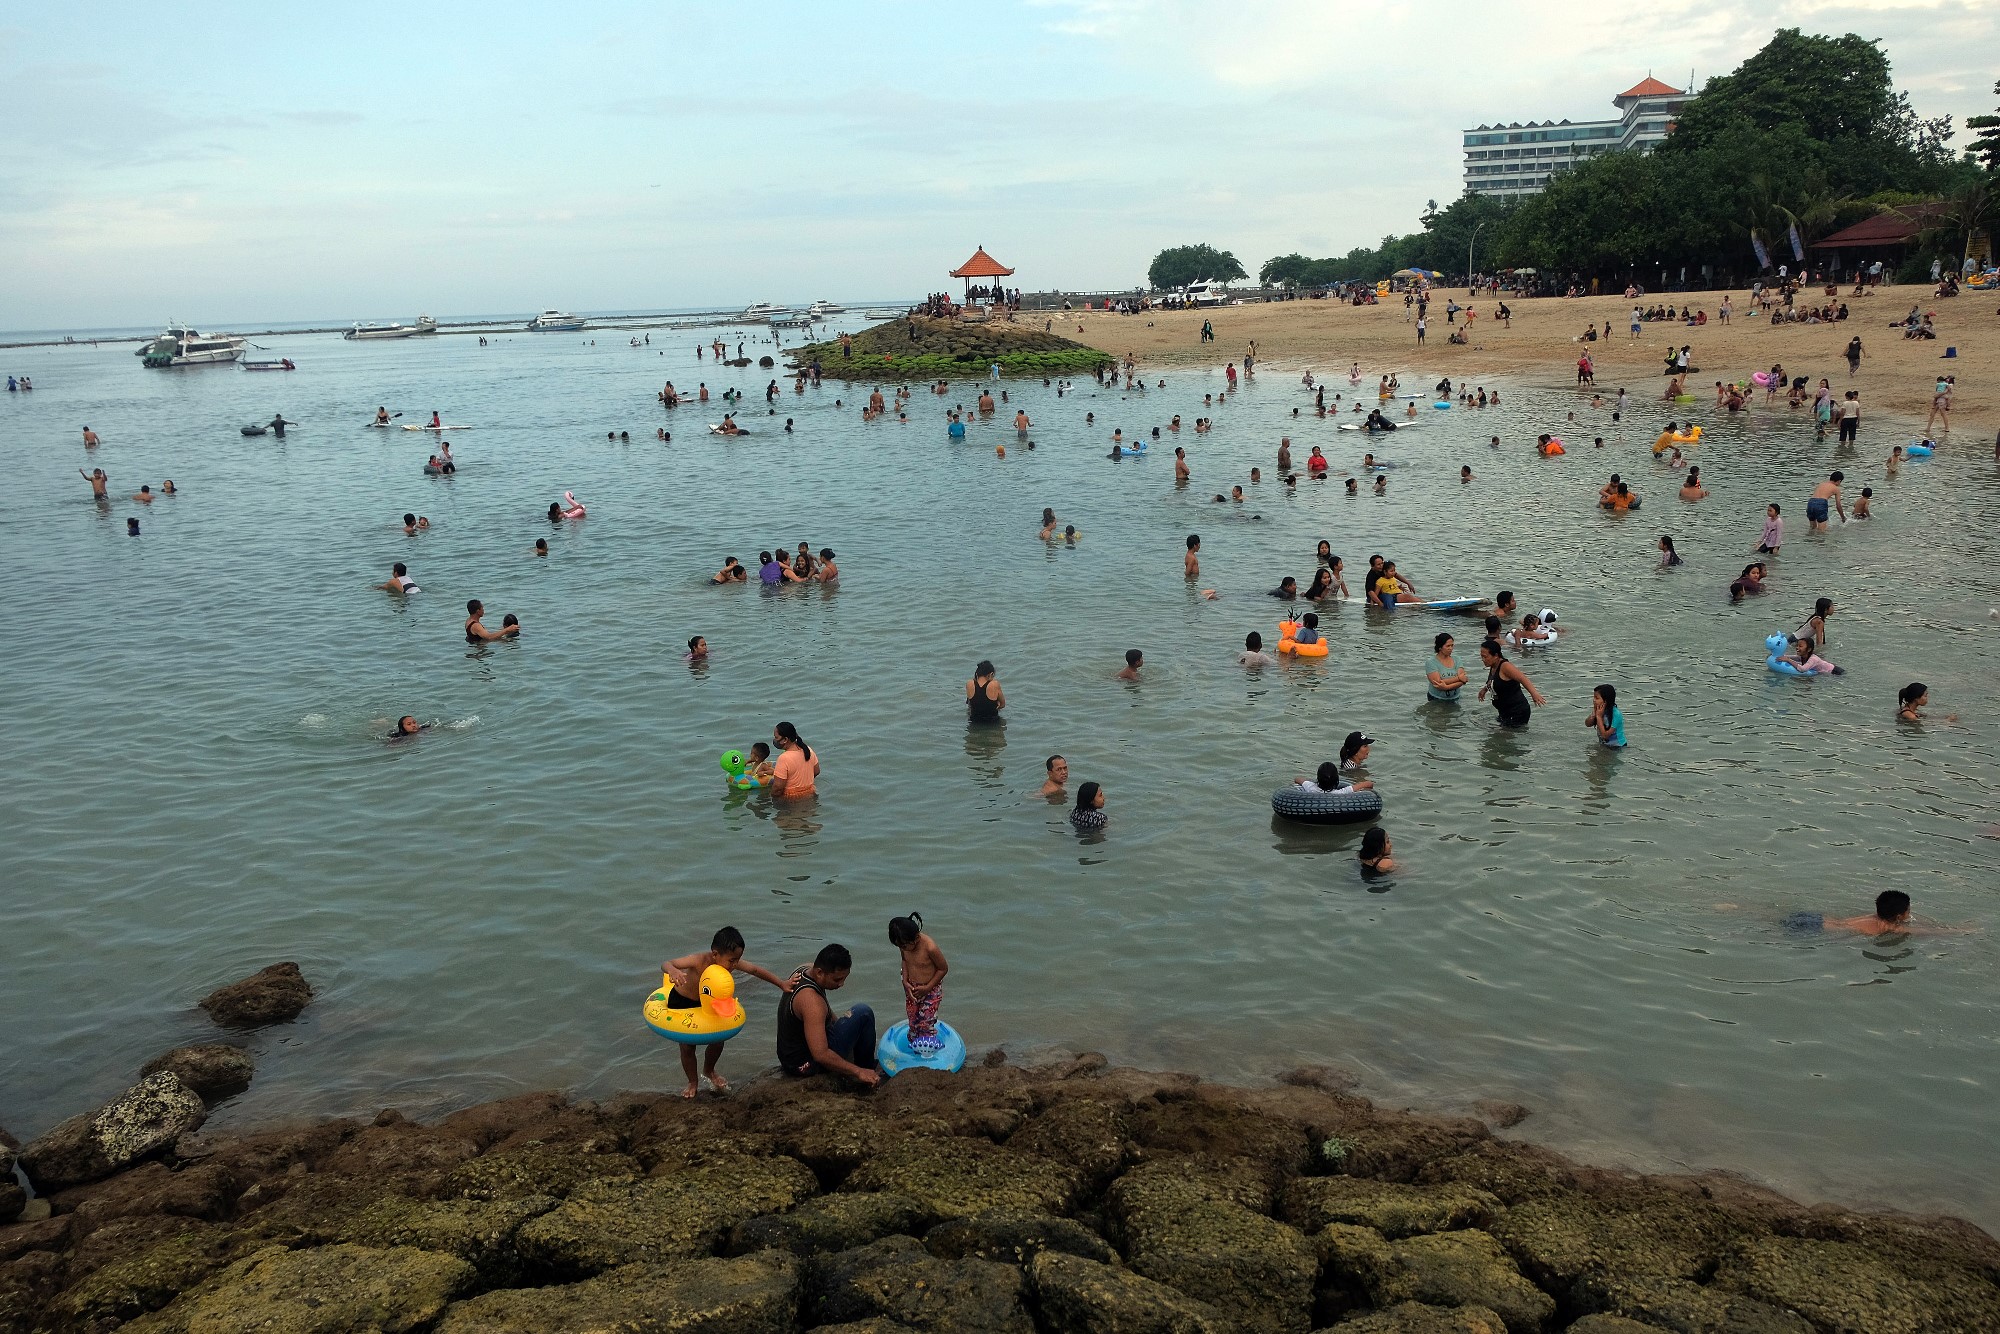 Wisatawan lokal menikmati suasana saat liburan di Pantai Sanur, Denpasar, Bali, Senin (15/3/2021). T